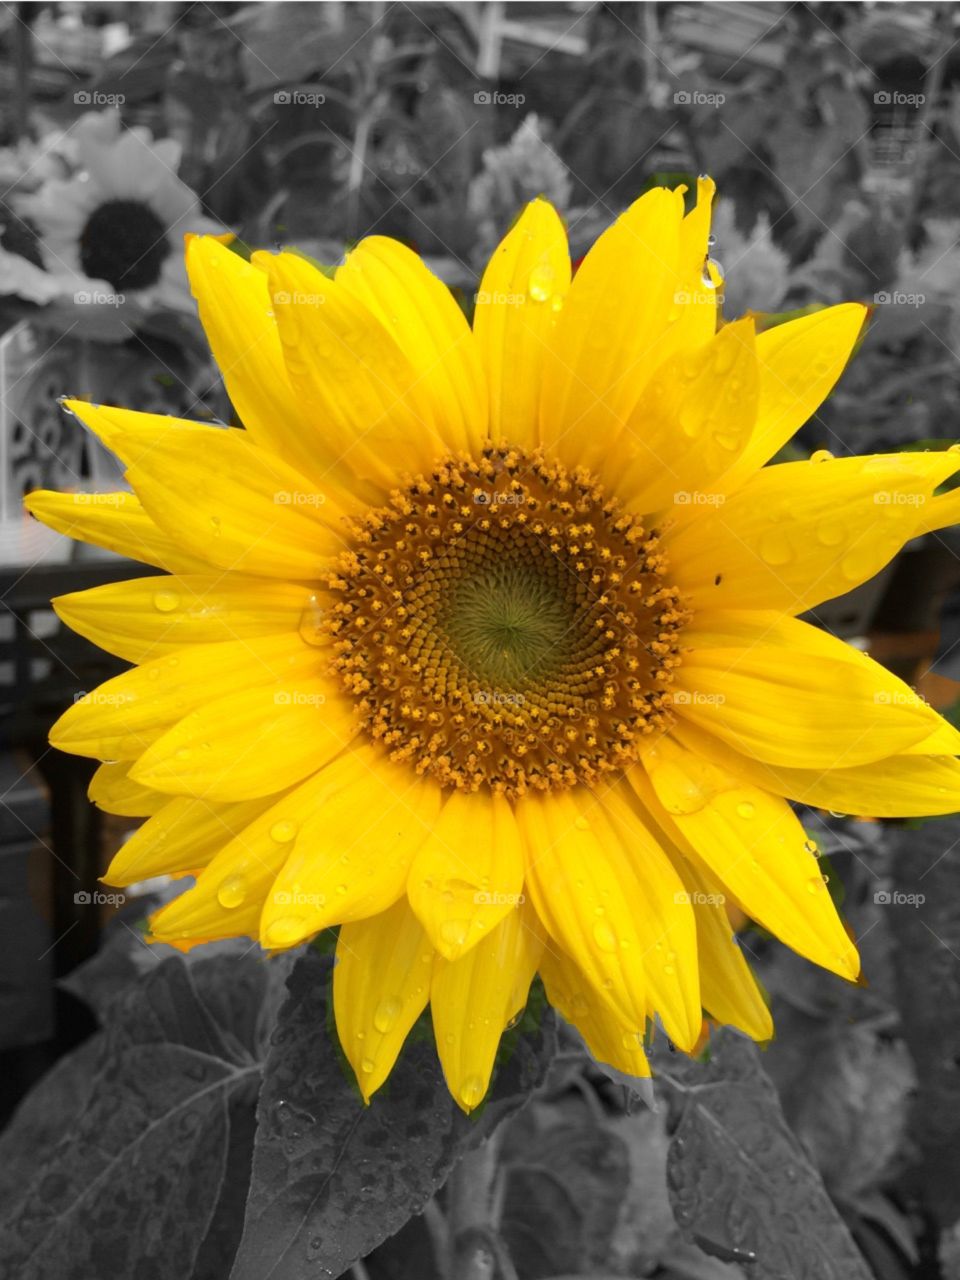 Sunflower in the garden. 